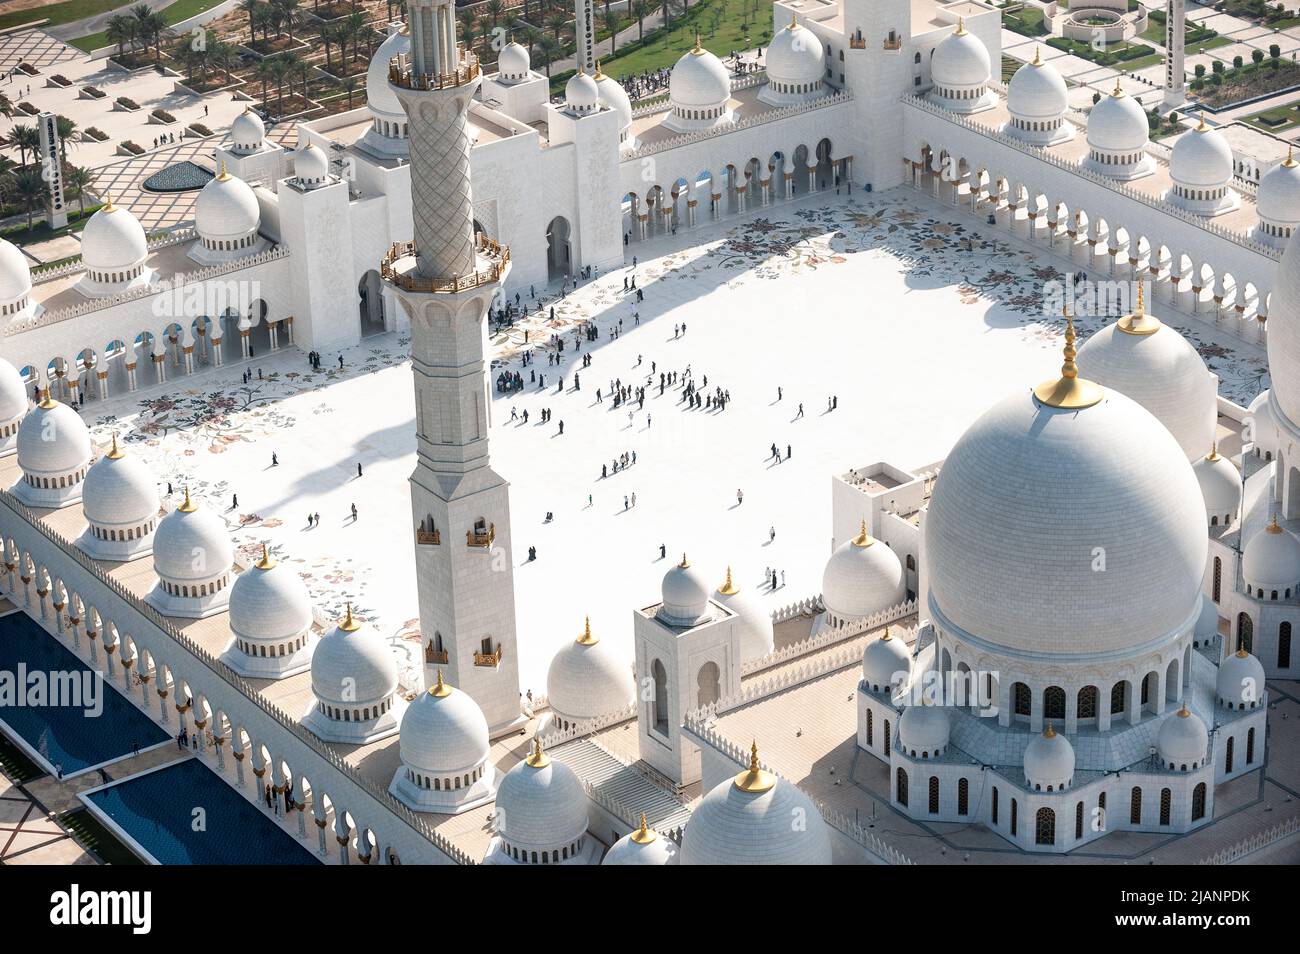 Exklusive Luftaufnahmen von Abu Dhabi und der Scheich-Zayed-Moschee. Einzigartige Perspektive der größten Moschee in den Vereinigten Arabischen Emiraten. Religiöser Tourismus. Stockfoto